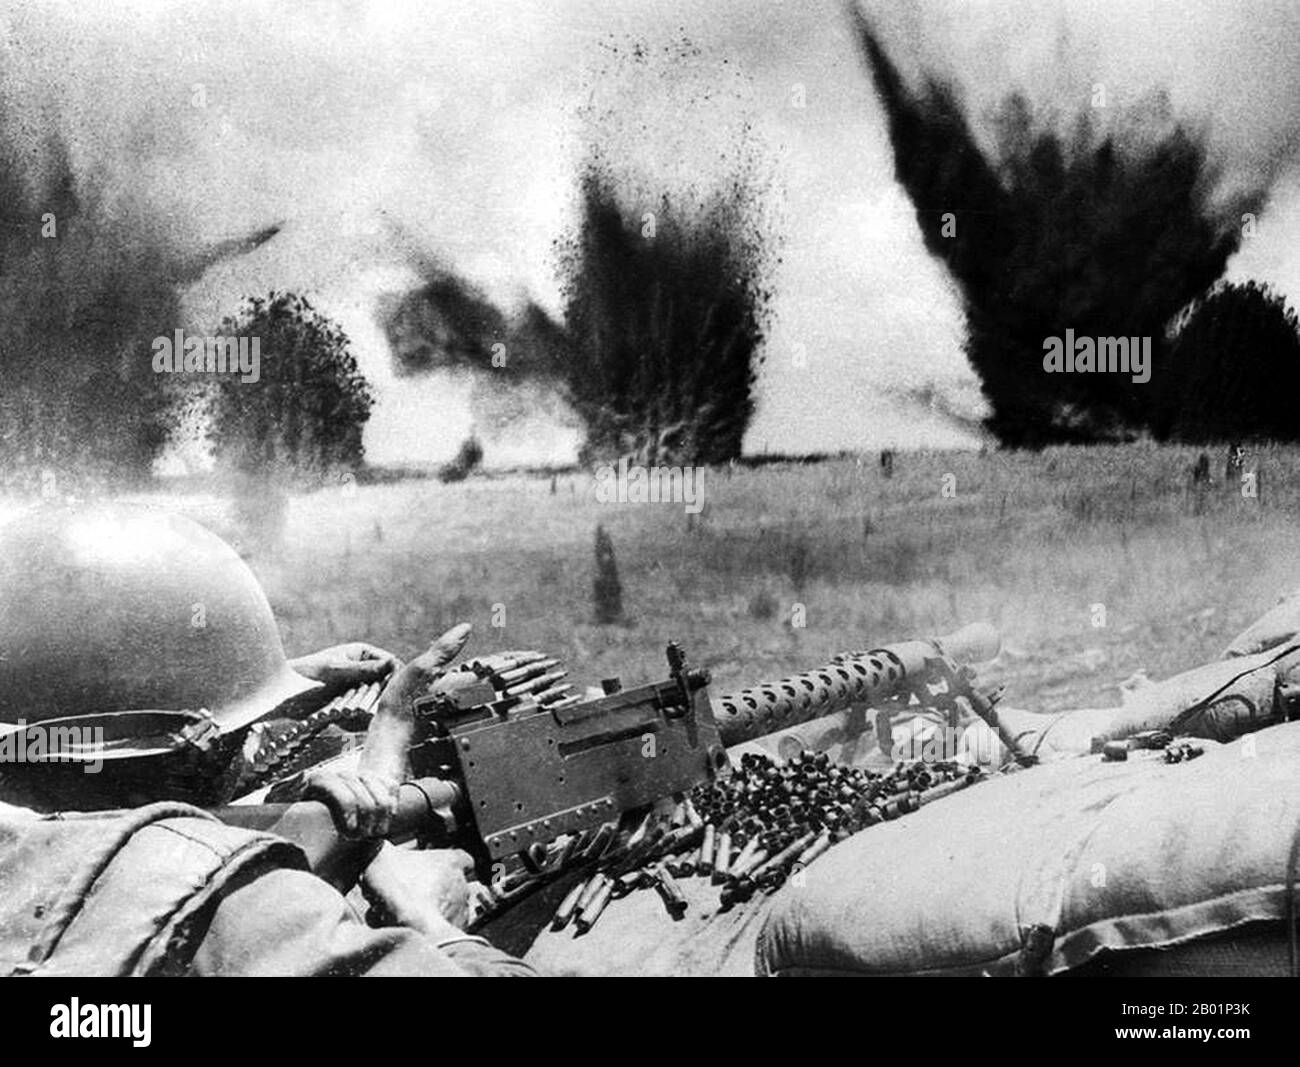 Vietnam: Bomben der U.S. Air Force erzeugen einen Vorhang aus fliegenden Schrapneln und Trümmern, knapp 200 Meter über dem Umkreis von Khe Sanh während der Belagerung der US-Marine-Basis. Foto: Major Nguyen Ngoc Hanh/ARVN (CC BY-SA 3,0 Lizenz), März 1968. Khe Sanh ist die Hauptstadt des Bezirks Hướng Hoá in der Provinz Quảng Trị, Vietnam, 63 km westlich von Đông Hà. Die Khe Sanh Combat Base war ein Außenposten des United States Marine Corps in Südvietnam (MGRS 48QXD850418), der während des Vietnamkriegs eingesetzt wurde. Die Landebahn wurde im September 1962 gebaut. Die Kämpfe begannen dort Ende April 1967, bekannt als die „Hill Fights“. Stockfoto